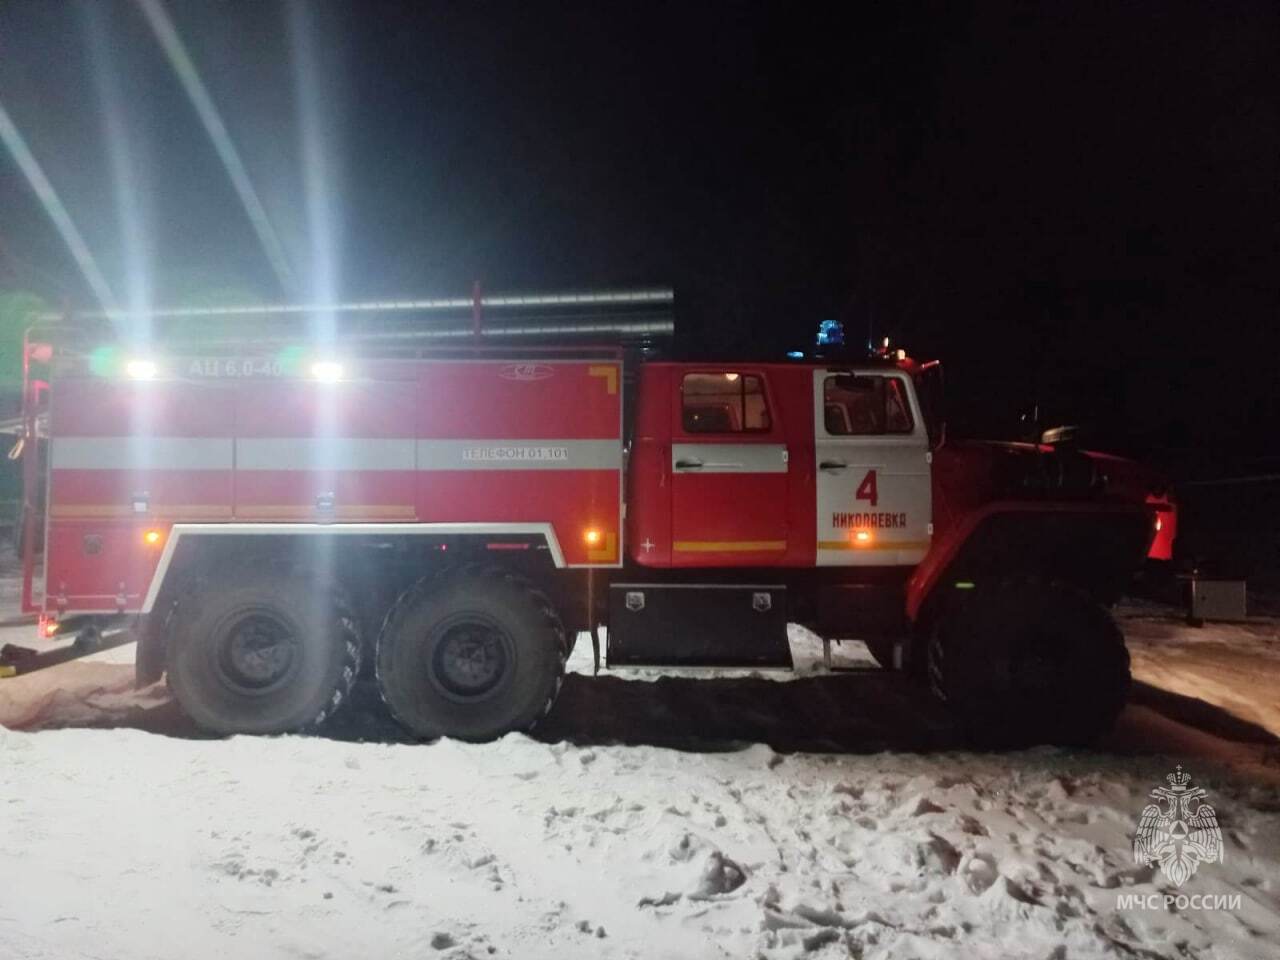 Электропроводка в подполье стала причиной ночного пожара в п. Волочаевка-1 в ЕАО